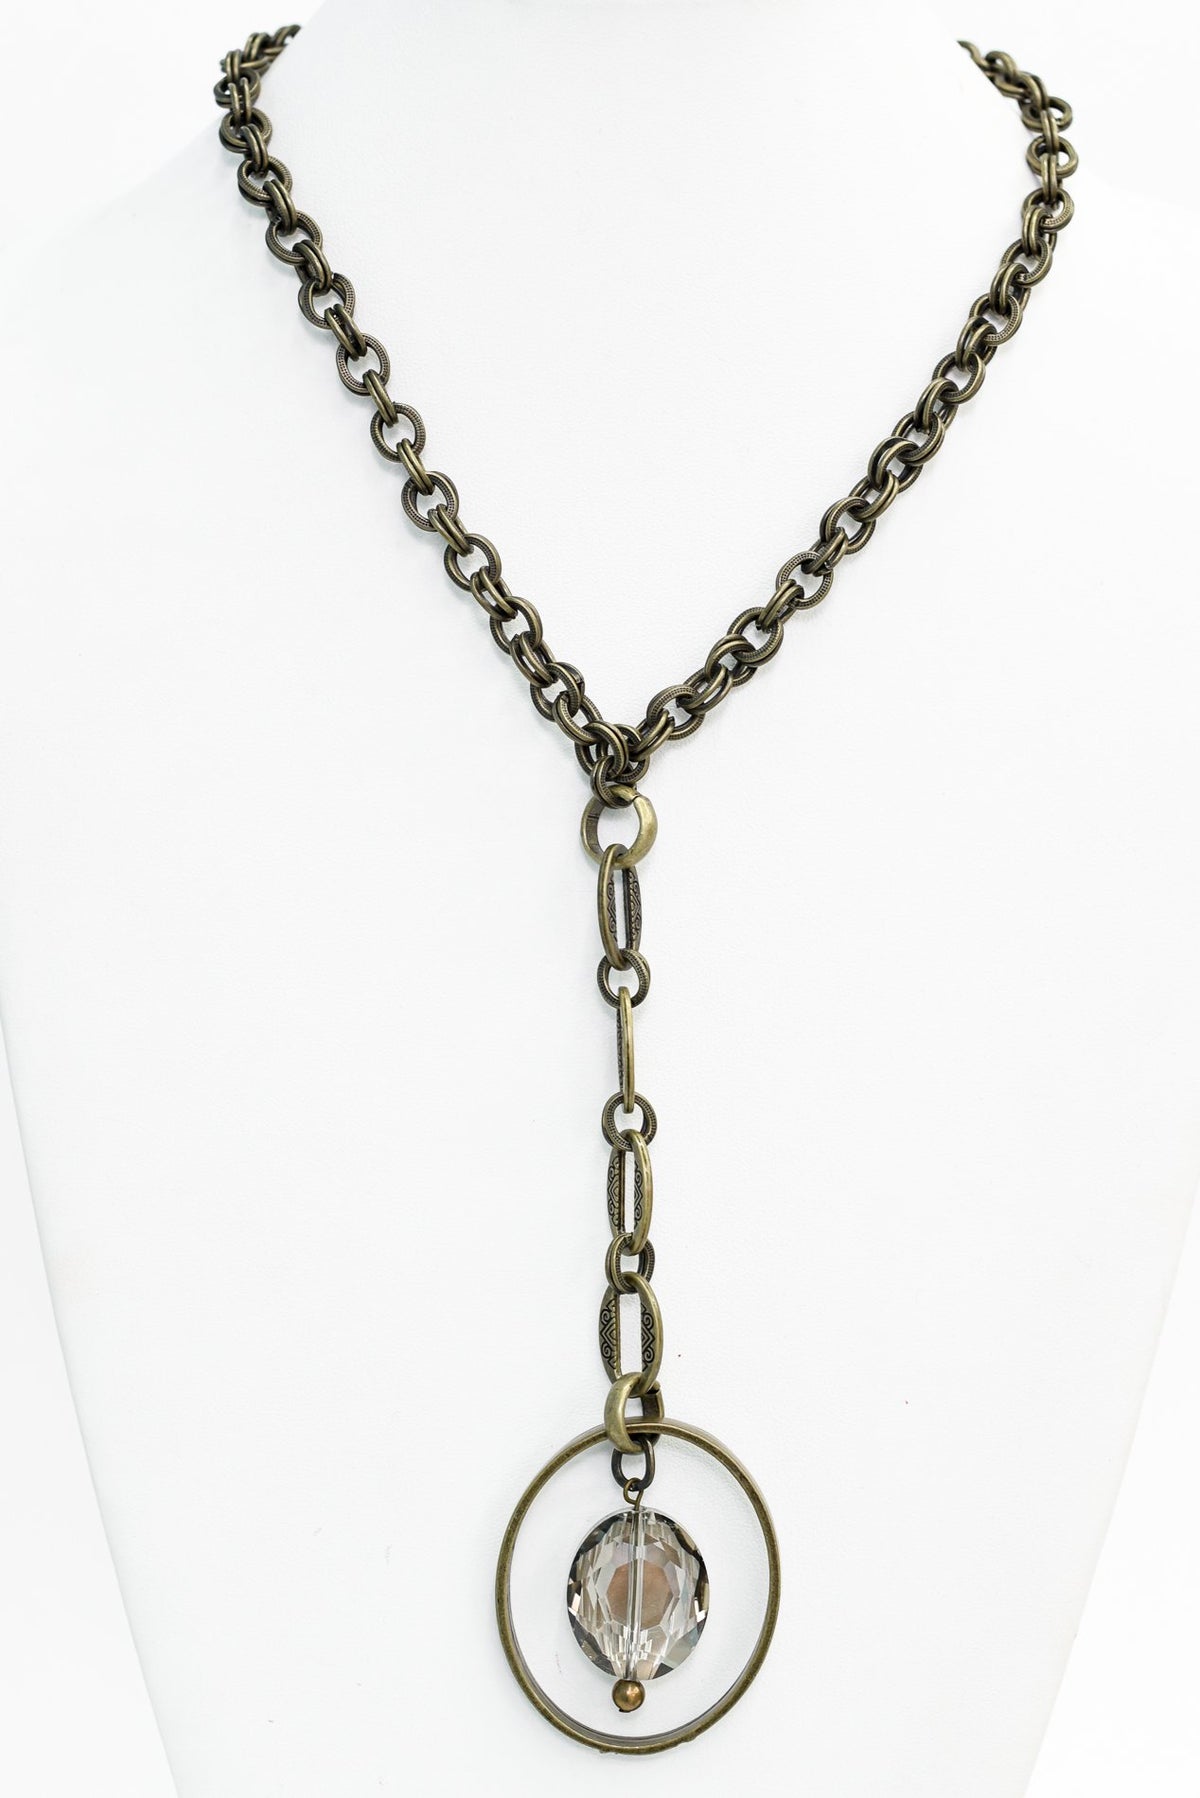 Bronze/Crystal Oval Pedant Necklace - NEK3507BZ